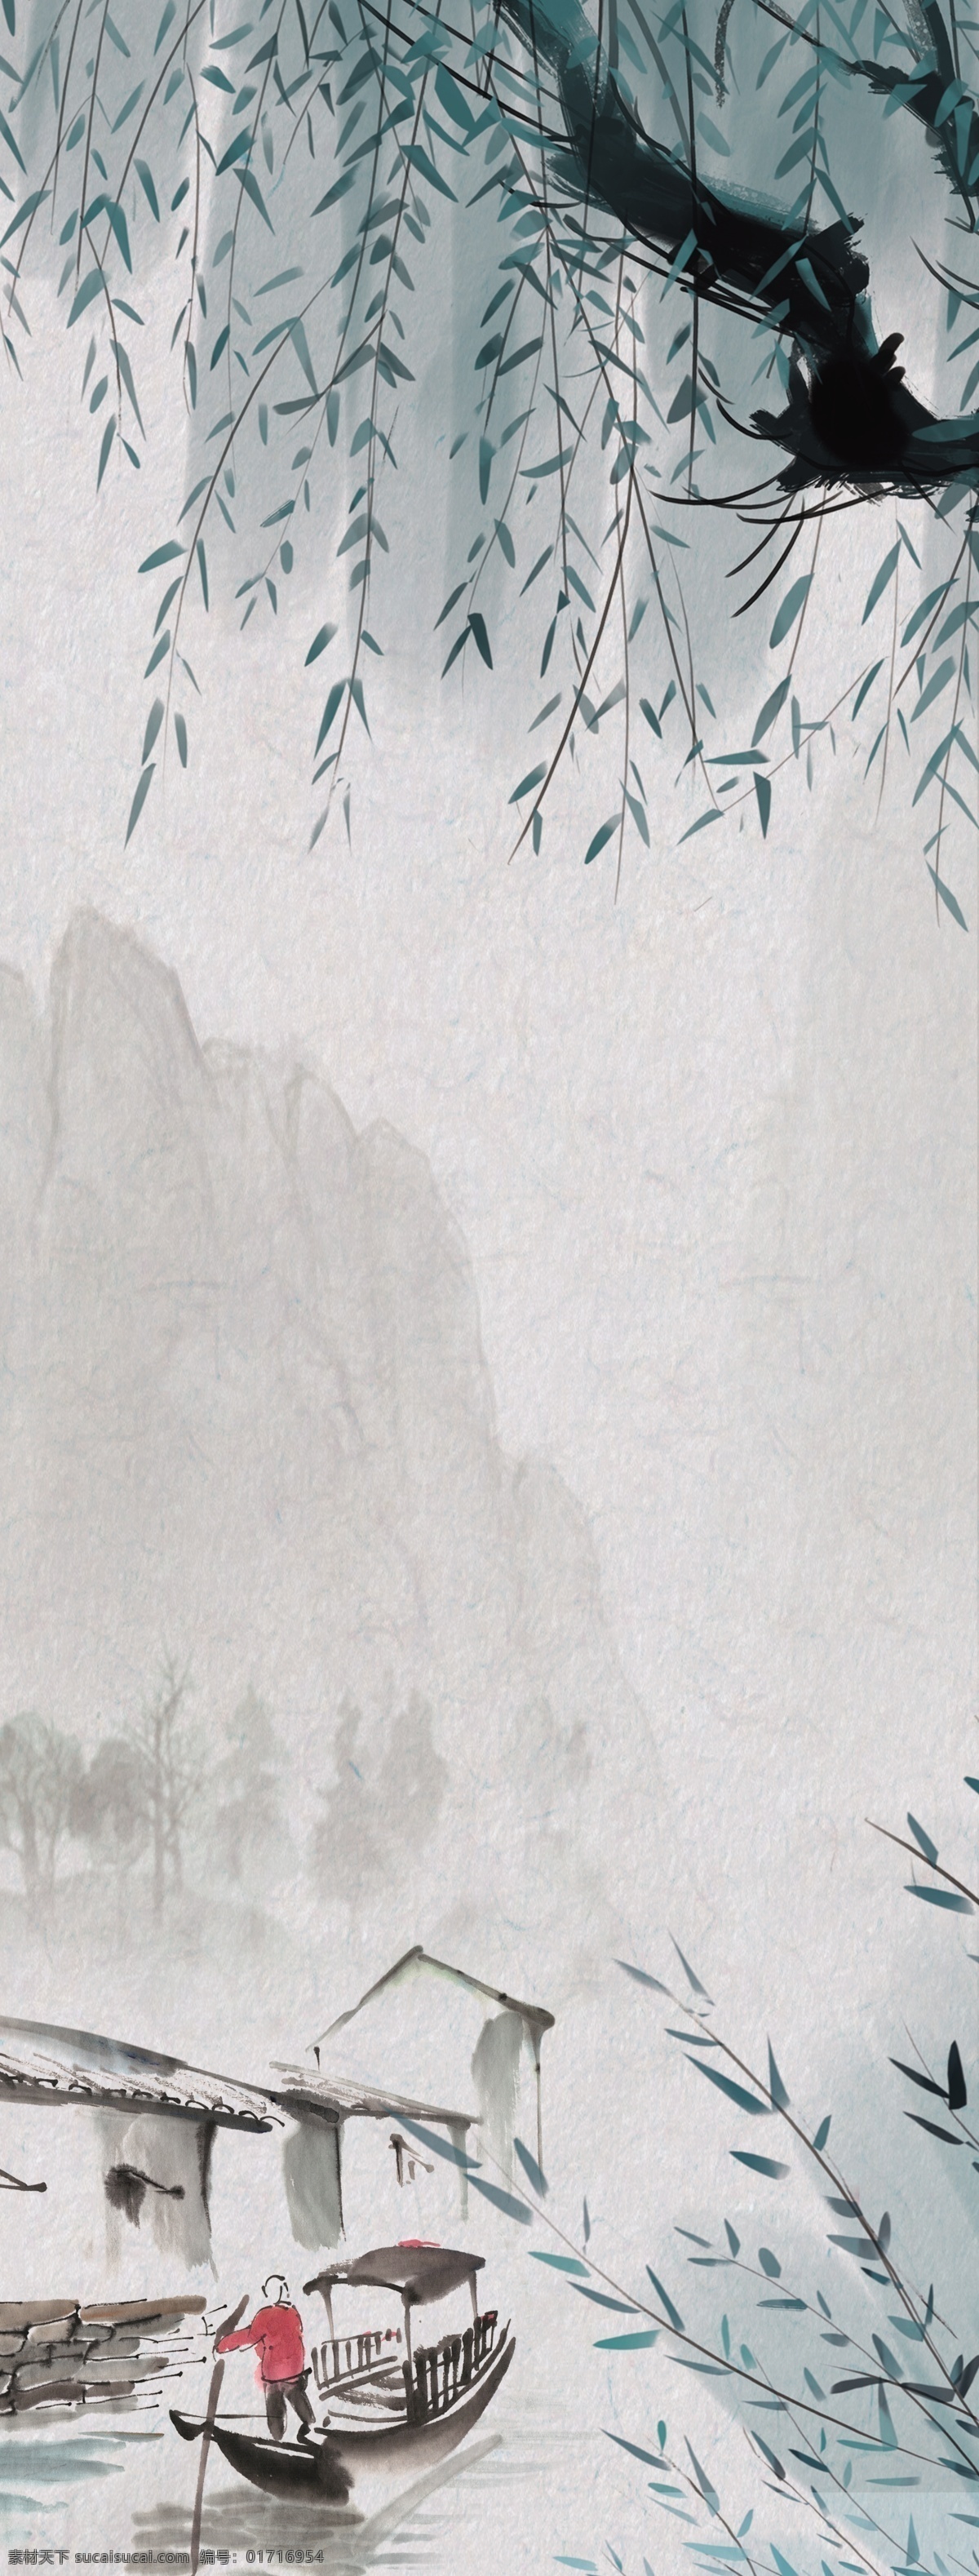 柳树 水墨画 书画 古代 古画 中国 人物画 装饰画 人物 国画 写意 山水画 传统 白描 小船 室外广告设计